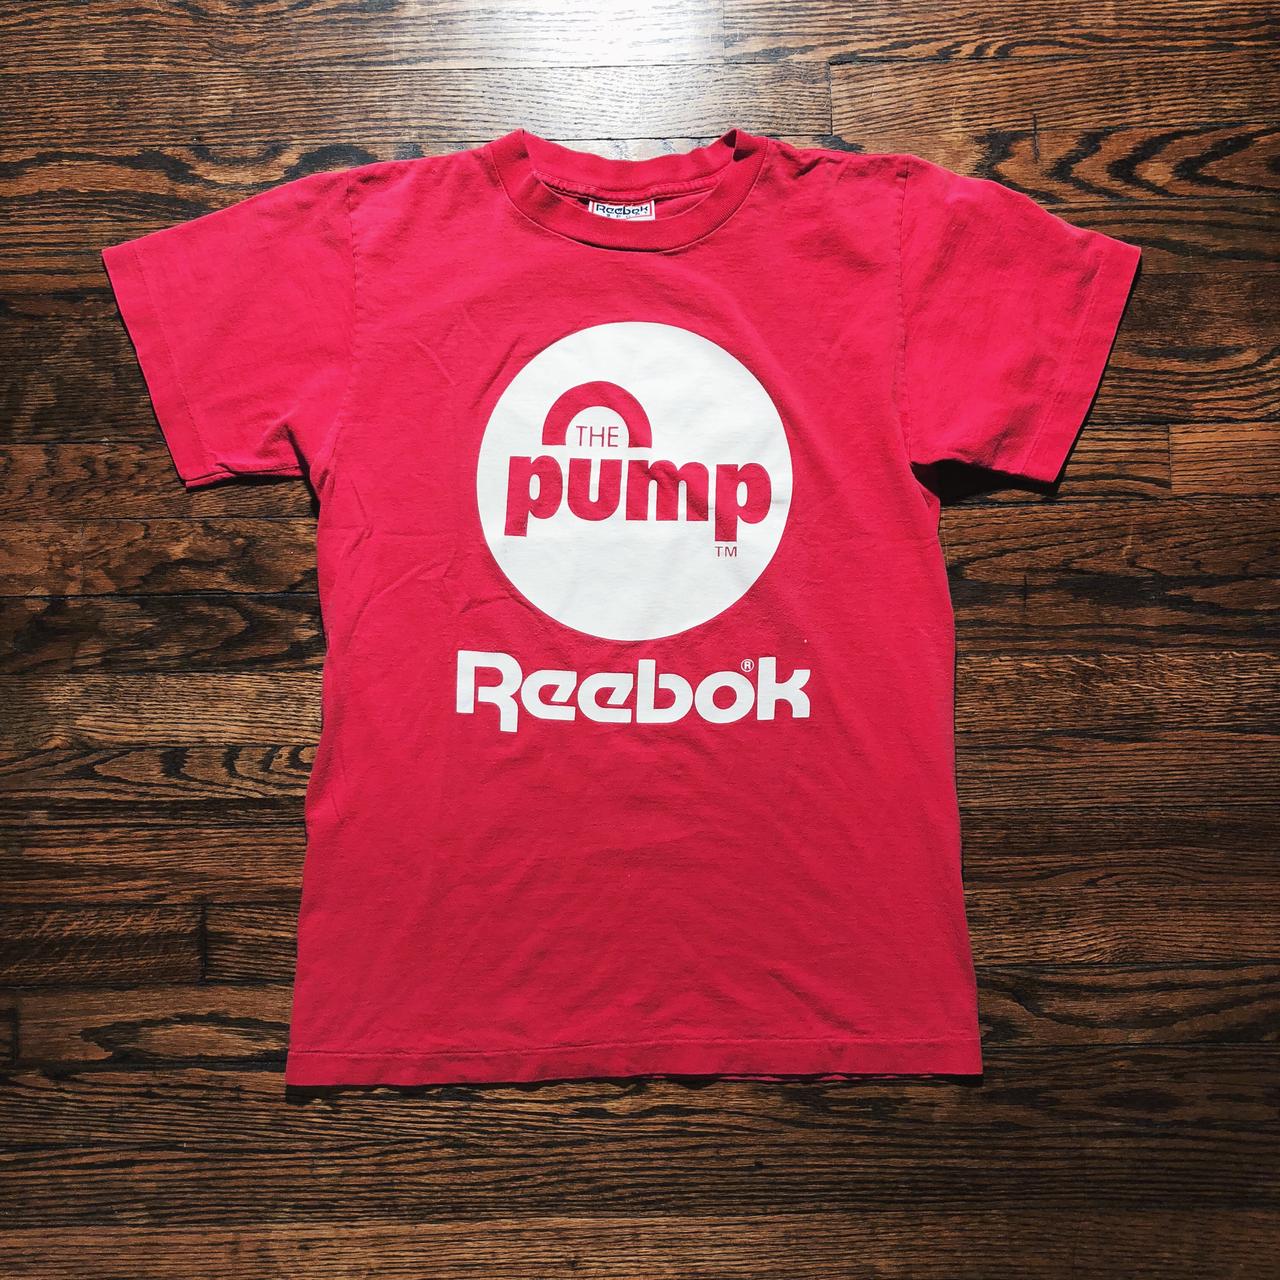 Reebok Pink T-shirt | Depop